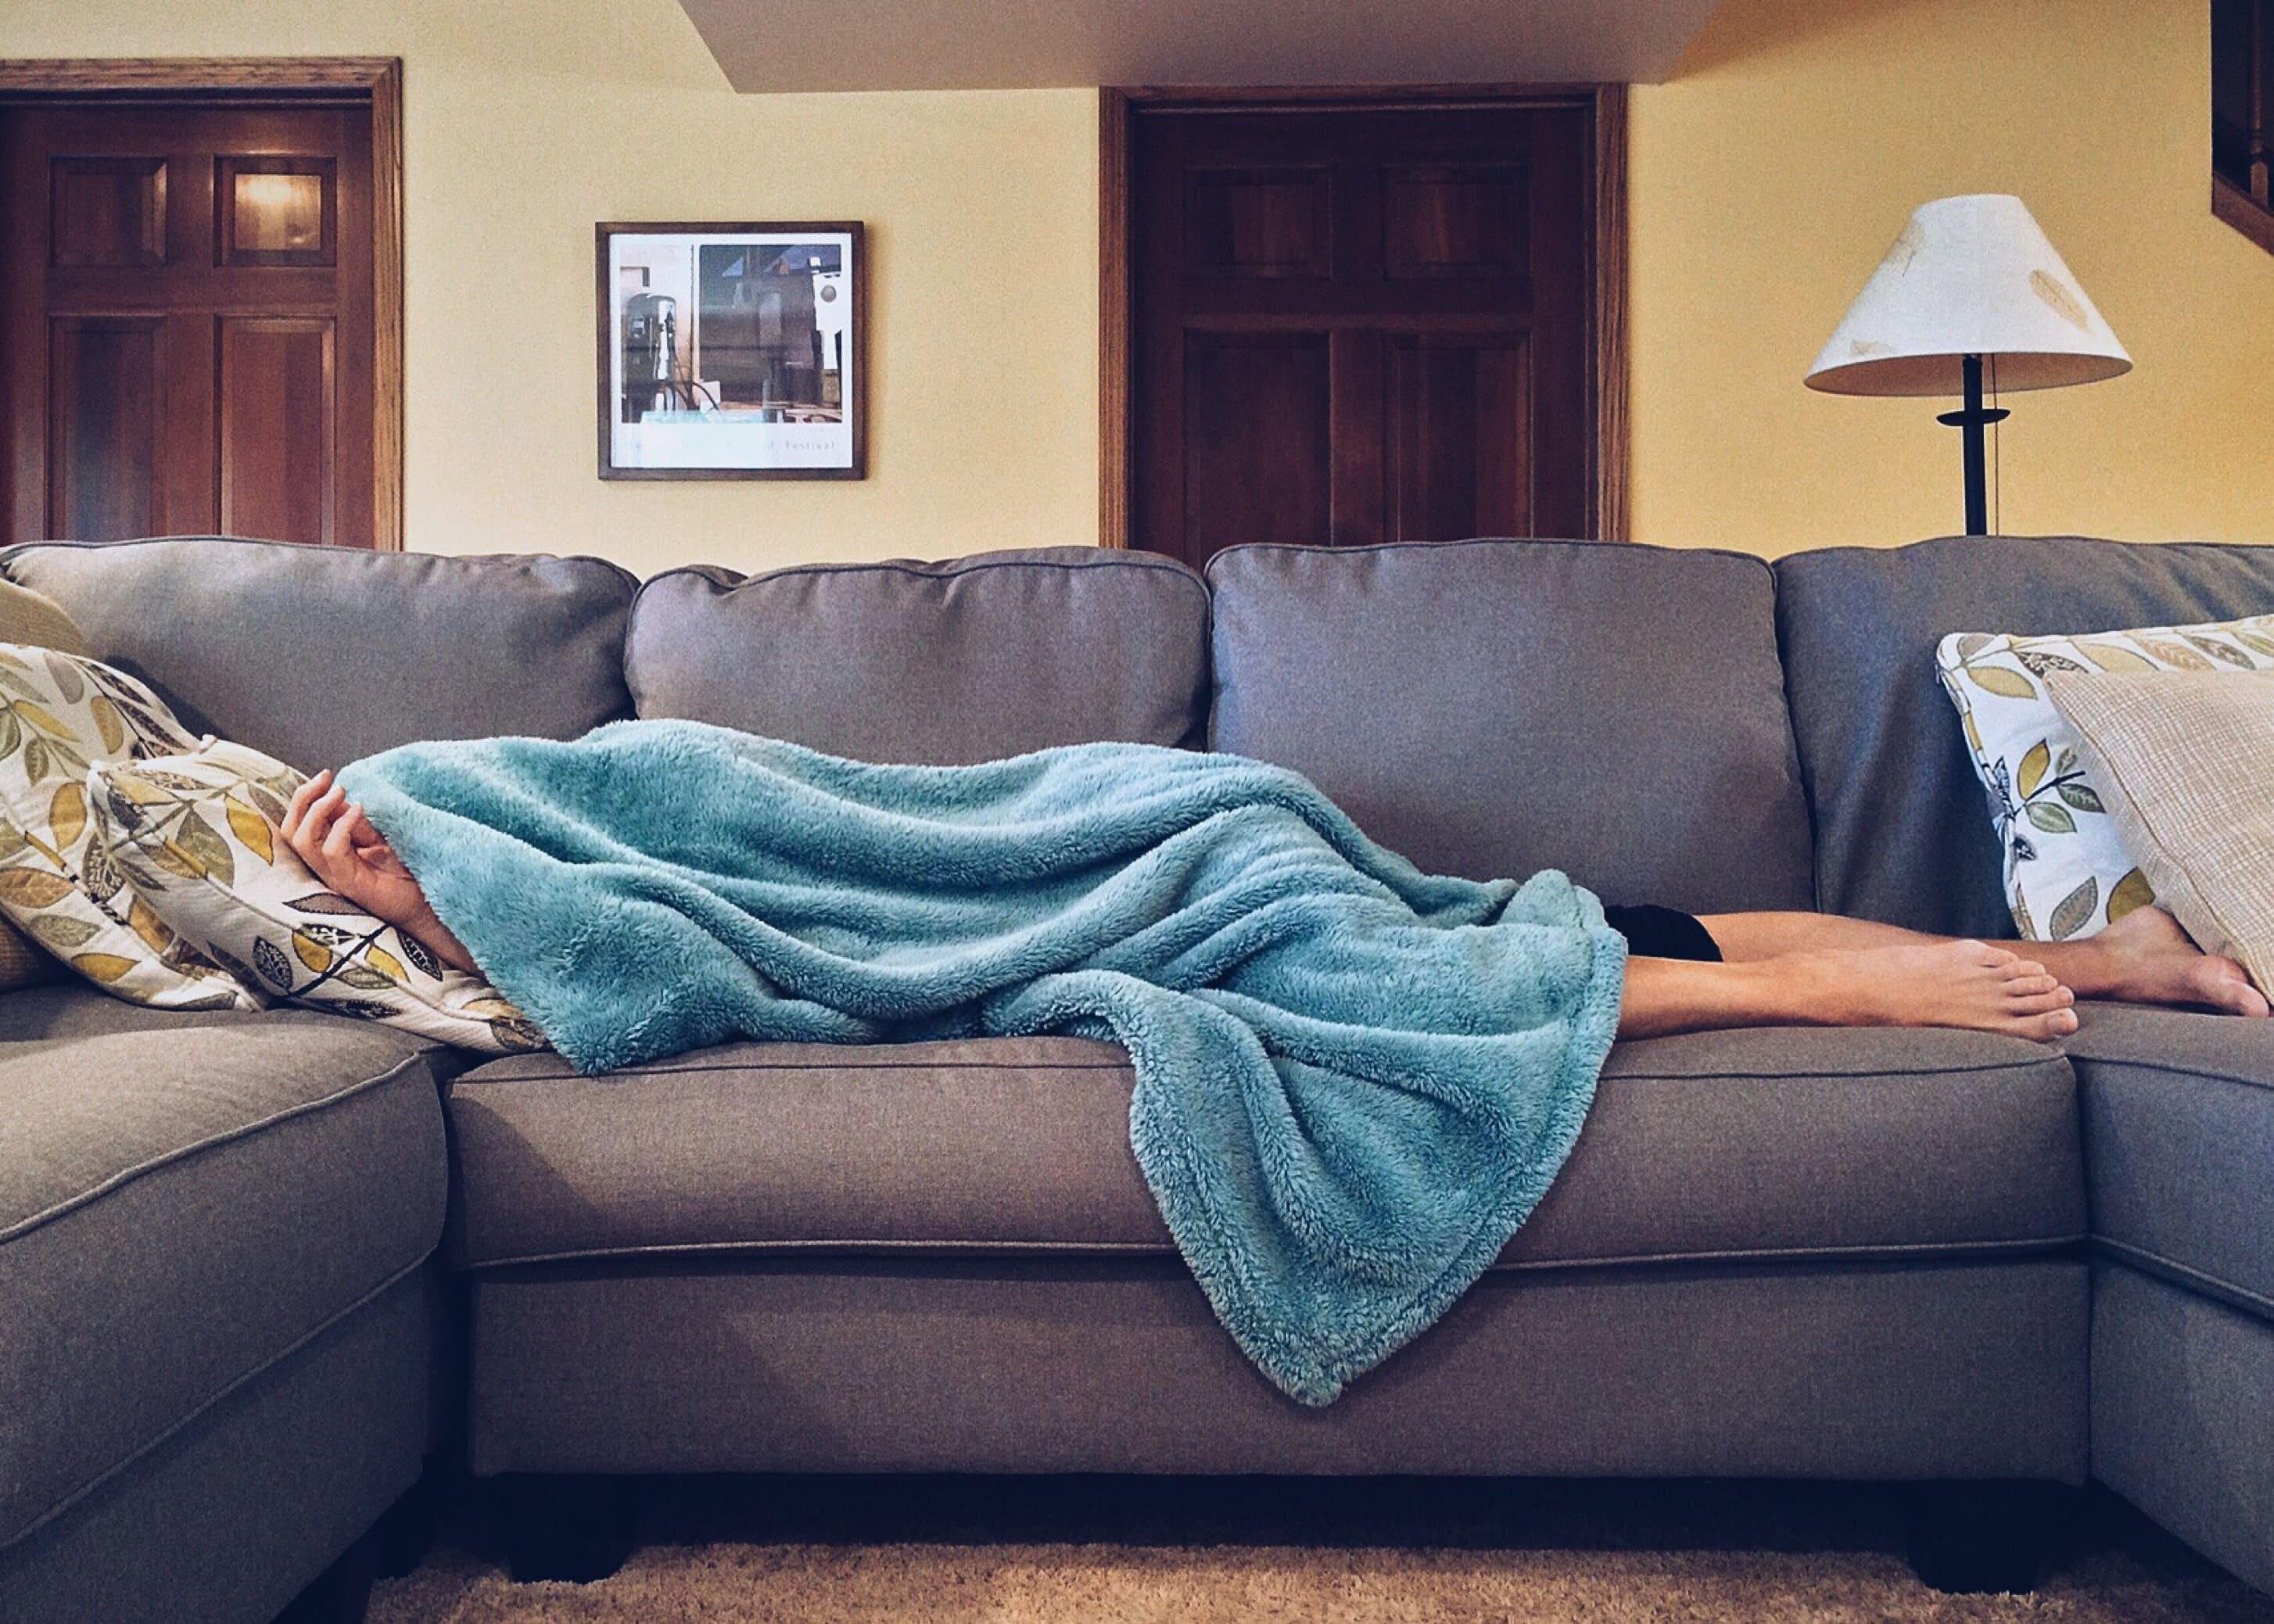 Além de um lugar confortável com baixa iluminação, a posição em que você dorme é um fator diferencial para a qualidade do seu sono